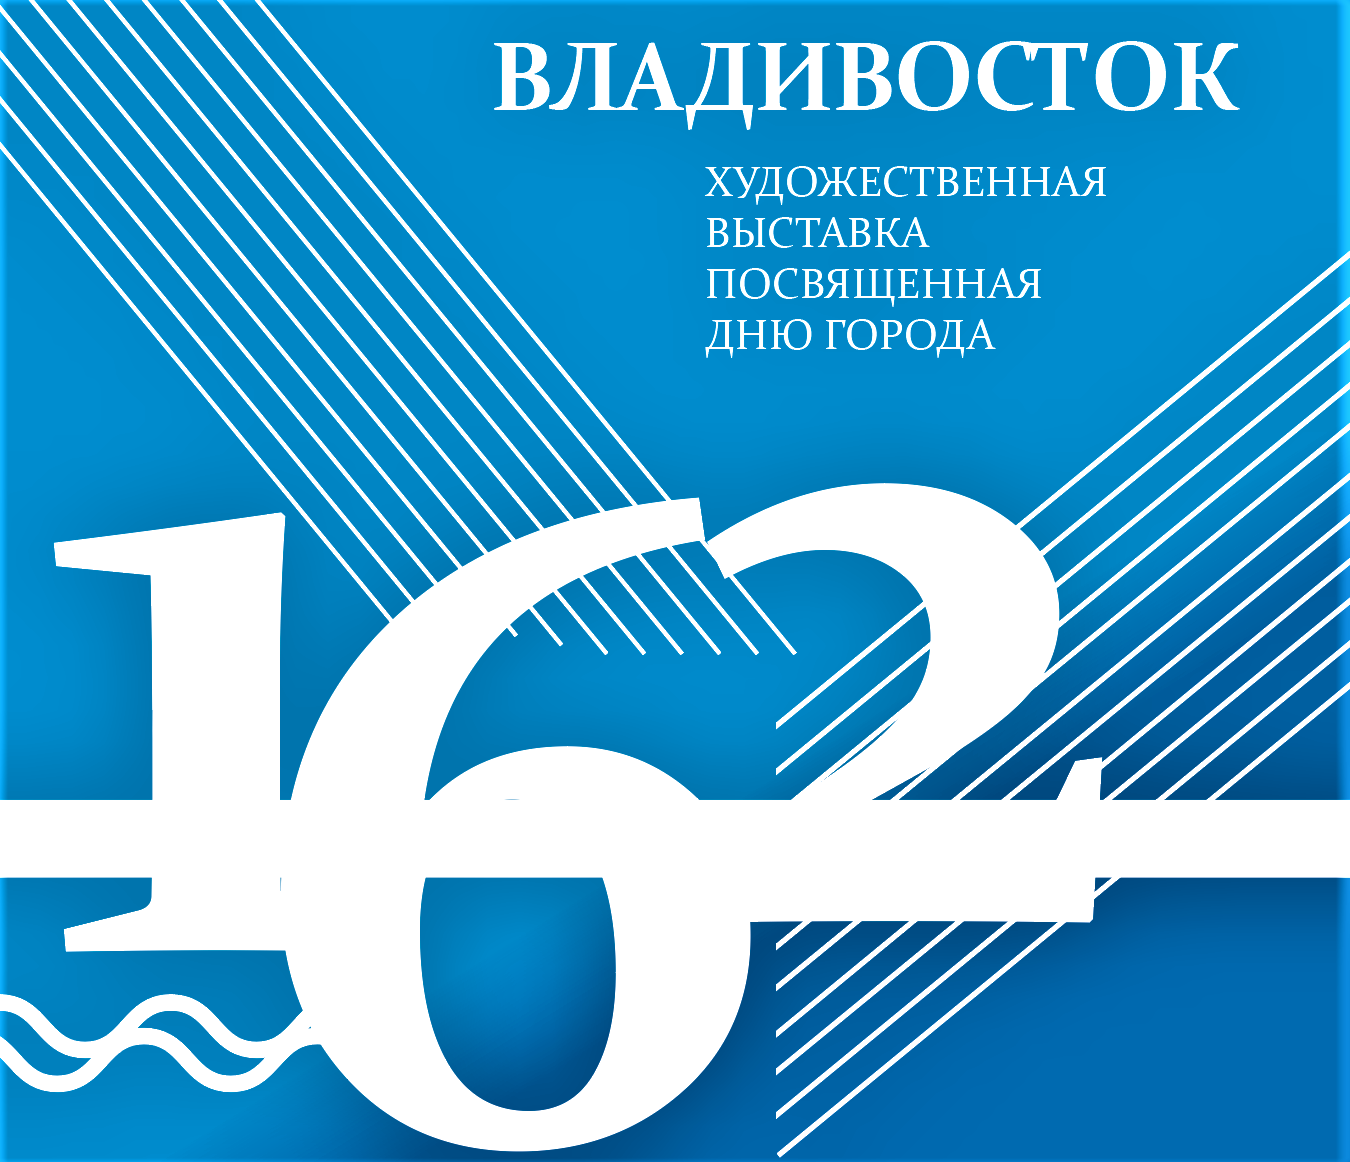 Глазами молодых: открывается выставка картин ко дню рождения Владивостока